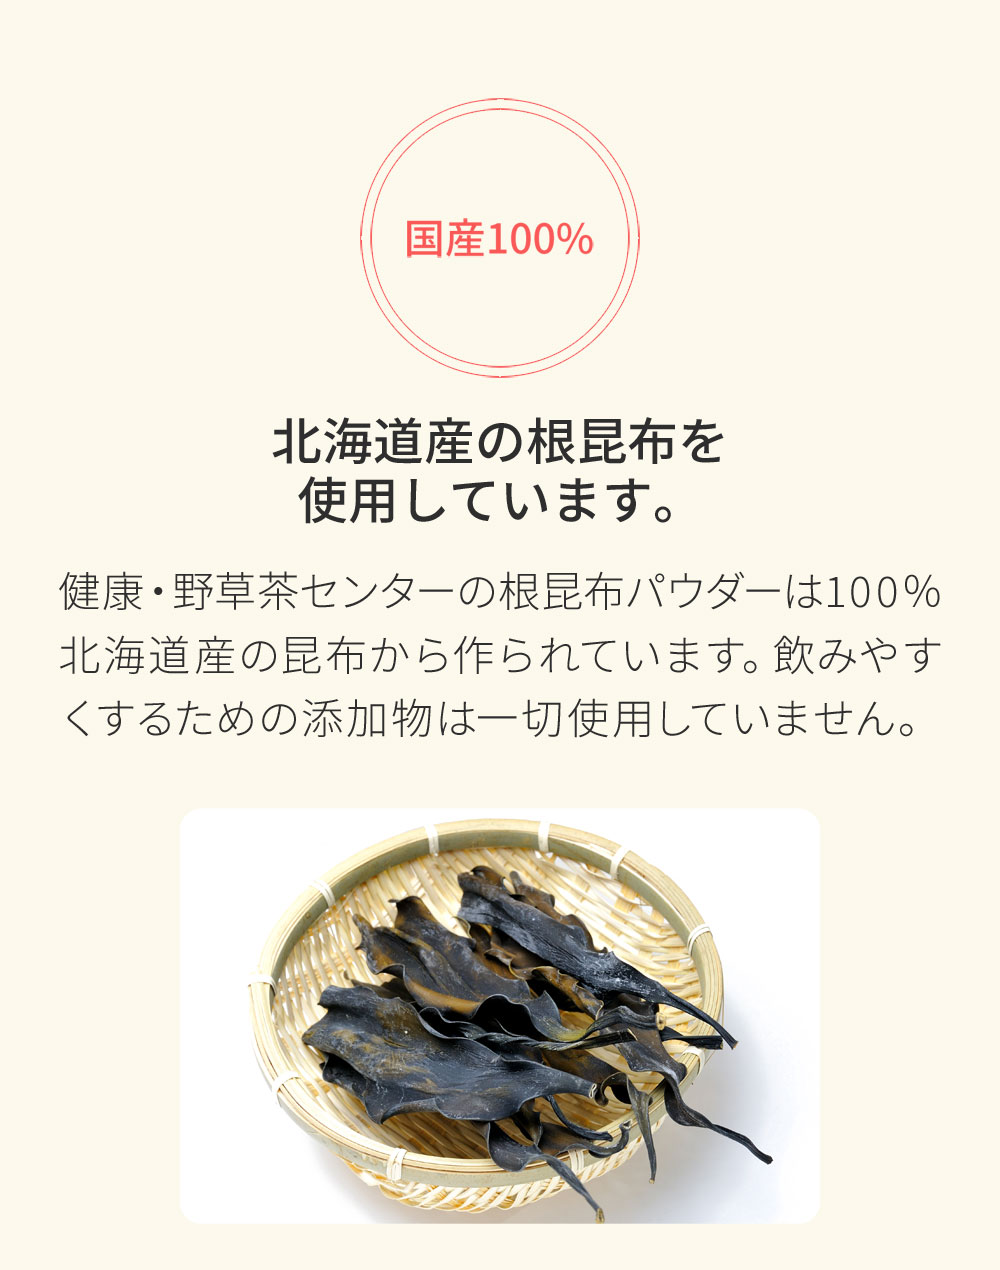 北海道産の根昆布を使用しています。